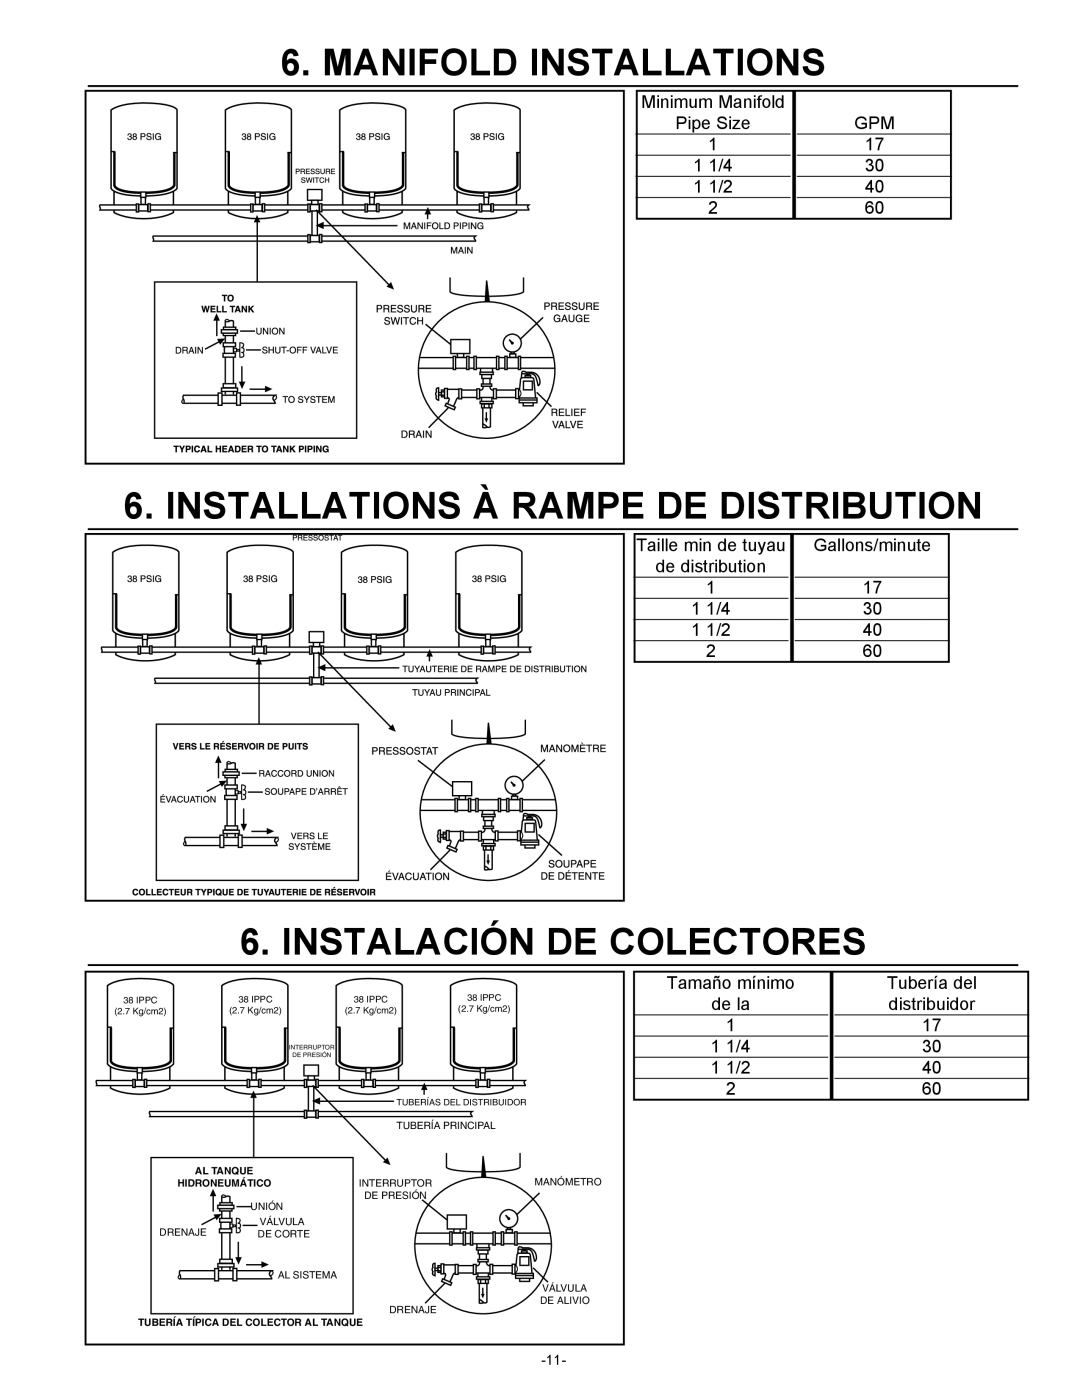 Amtrol 100 PSIG warranty Manifold Installations, Installations À Rampe De Distribution, Instalación De Colectores 